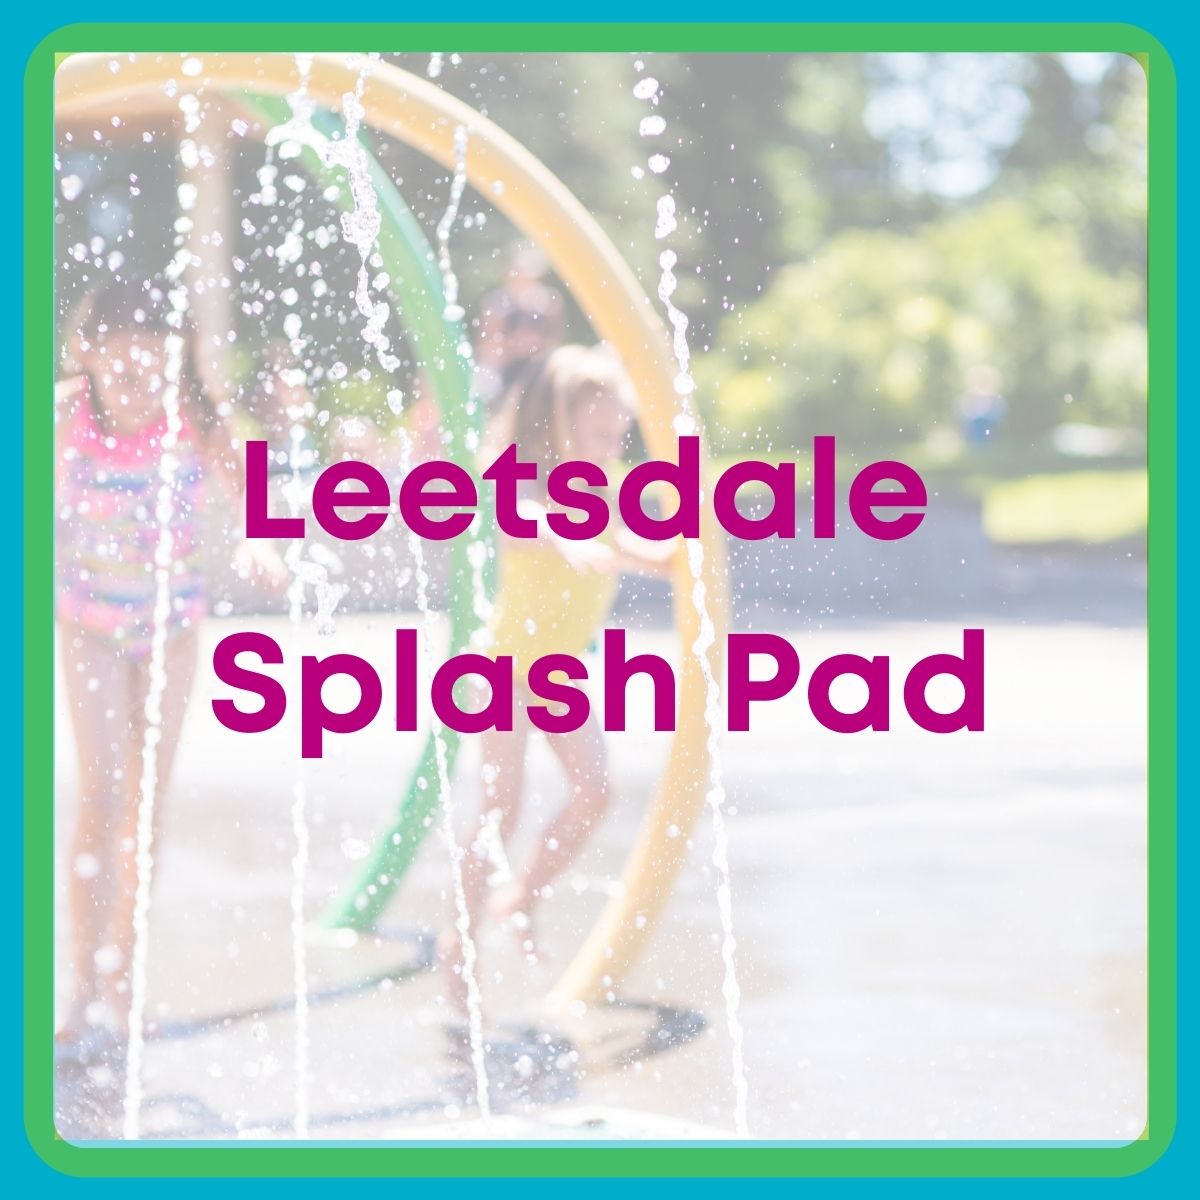 Leetsdale Splash Pad title image